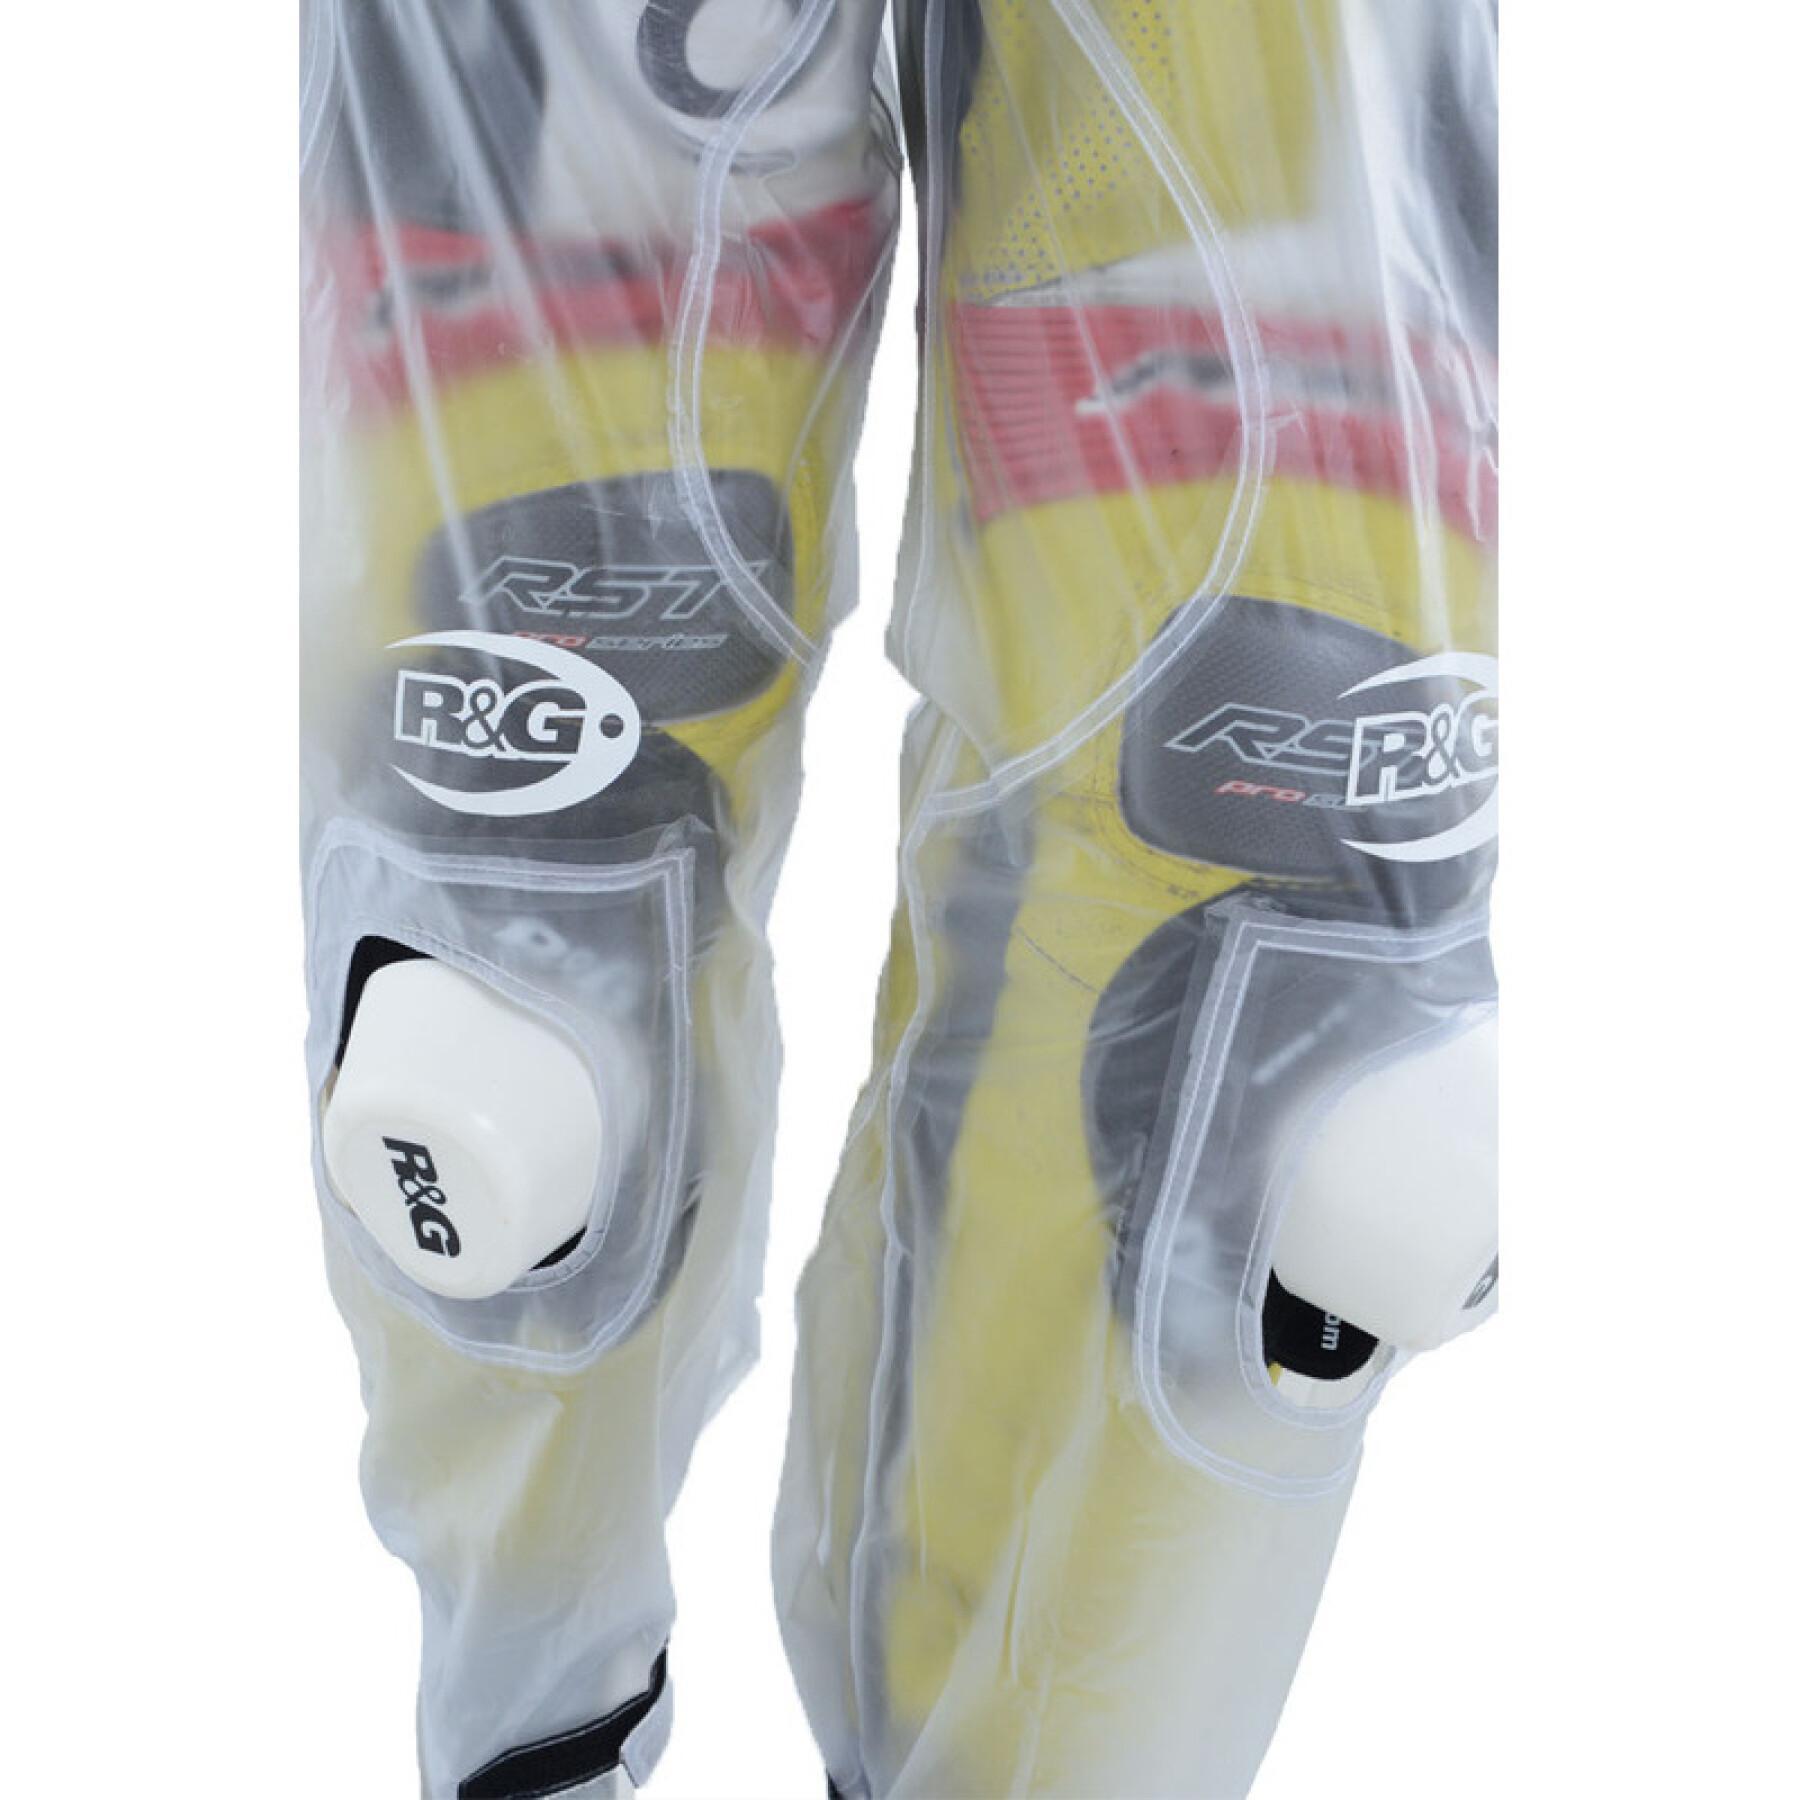 Pantalón inpermeable para moto R&G Racing